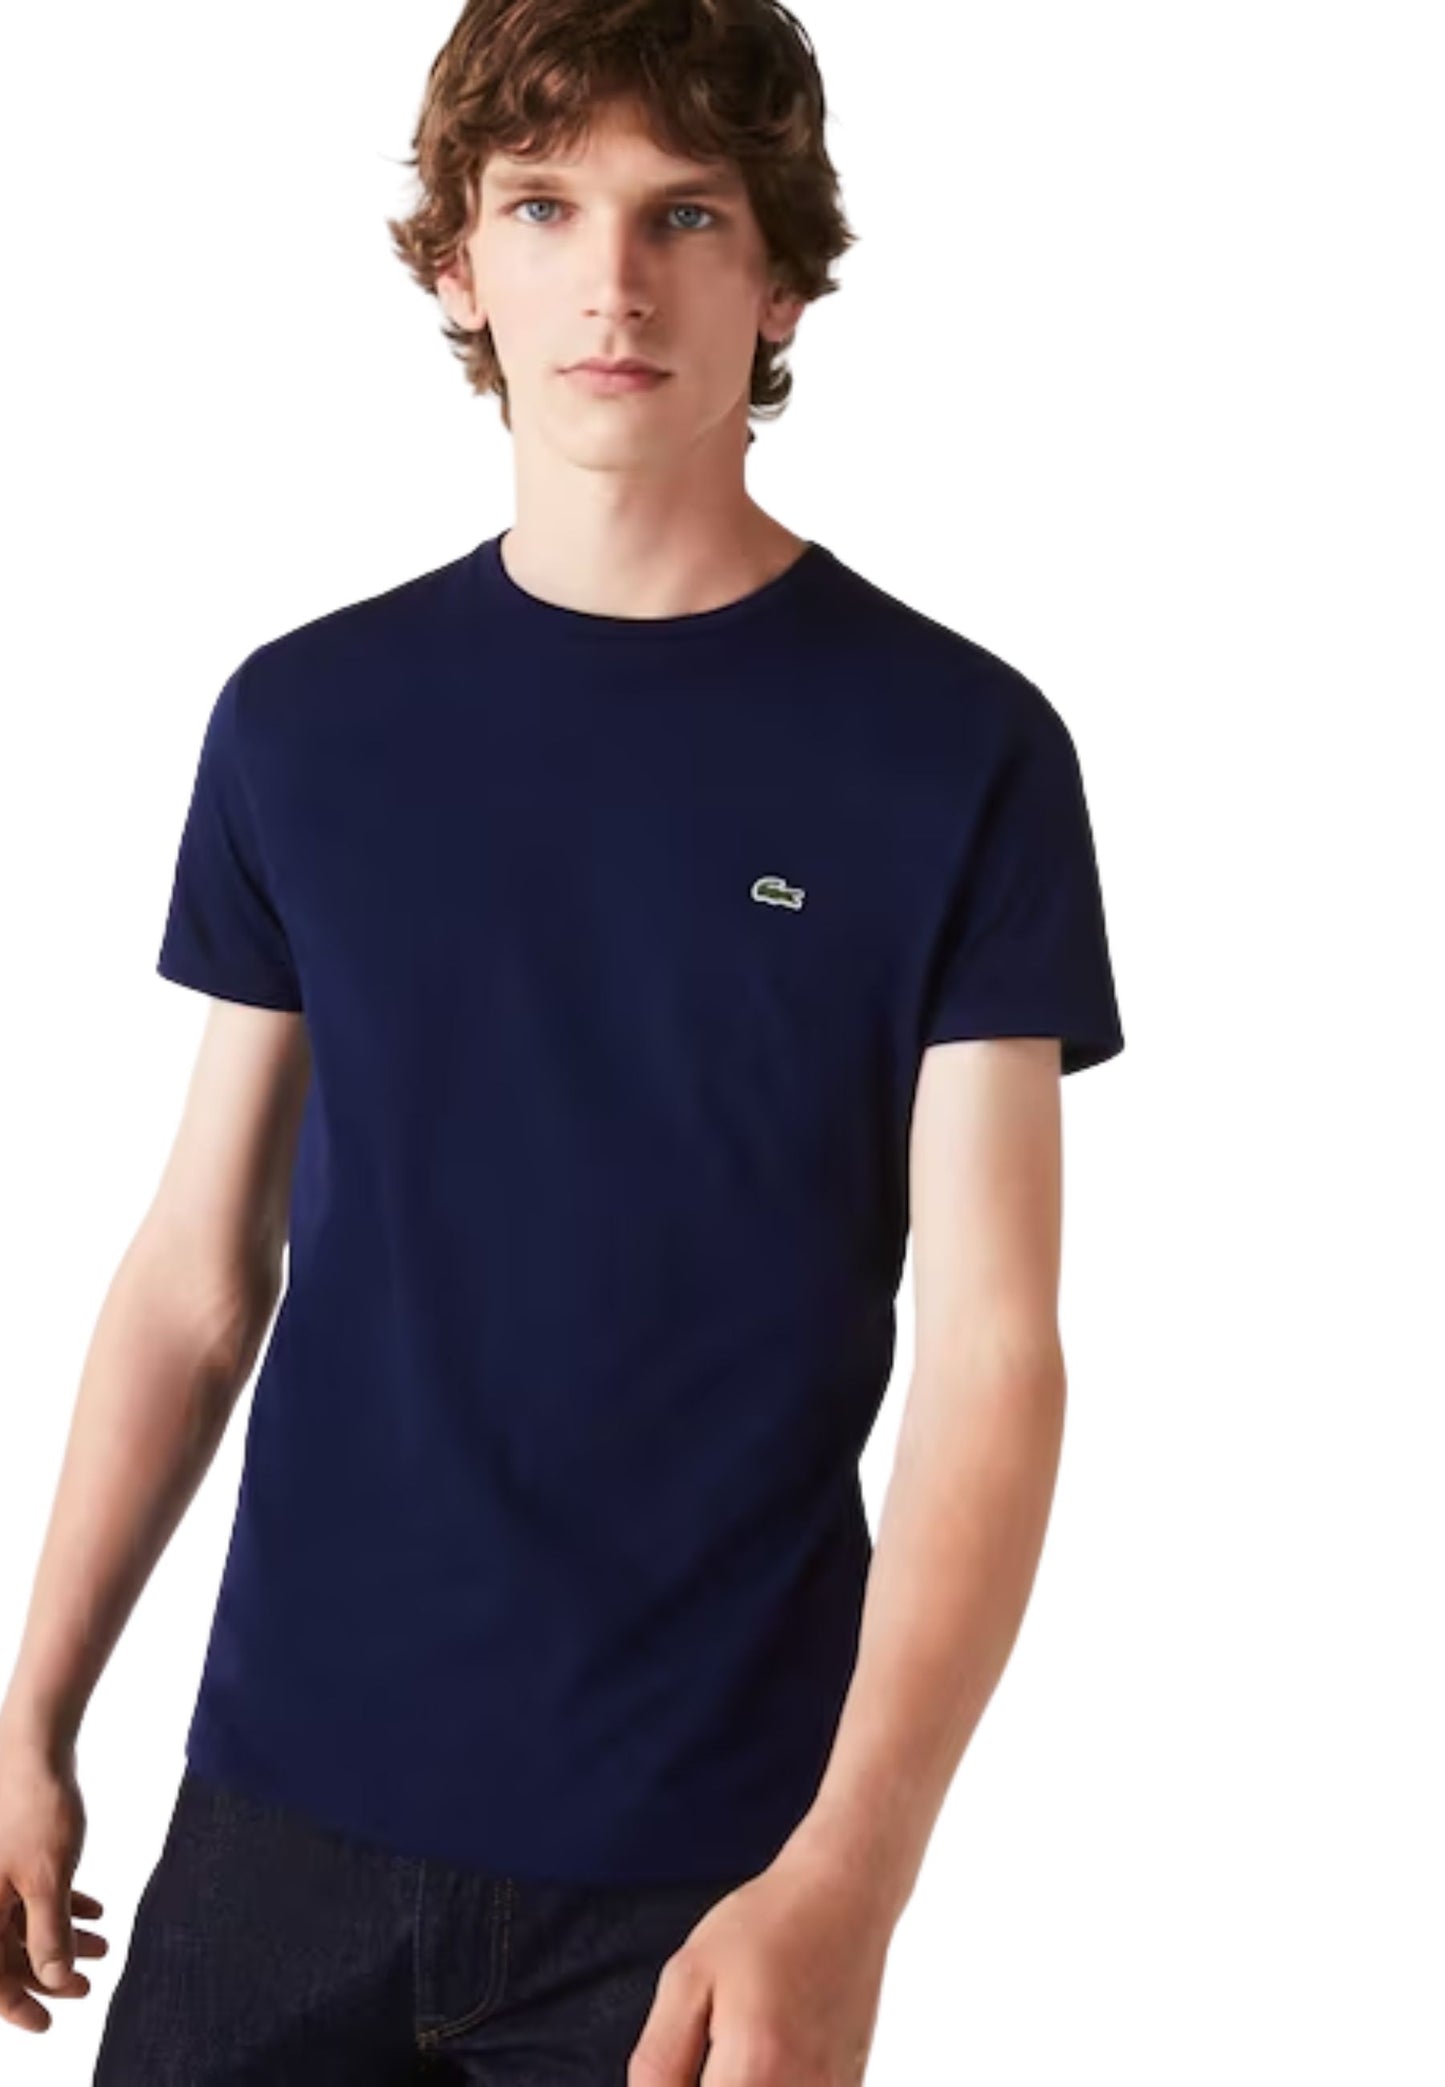 T-shirt girocollo manica corta blu cotone Lacoste P24